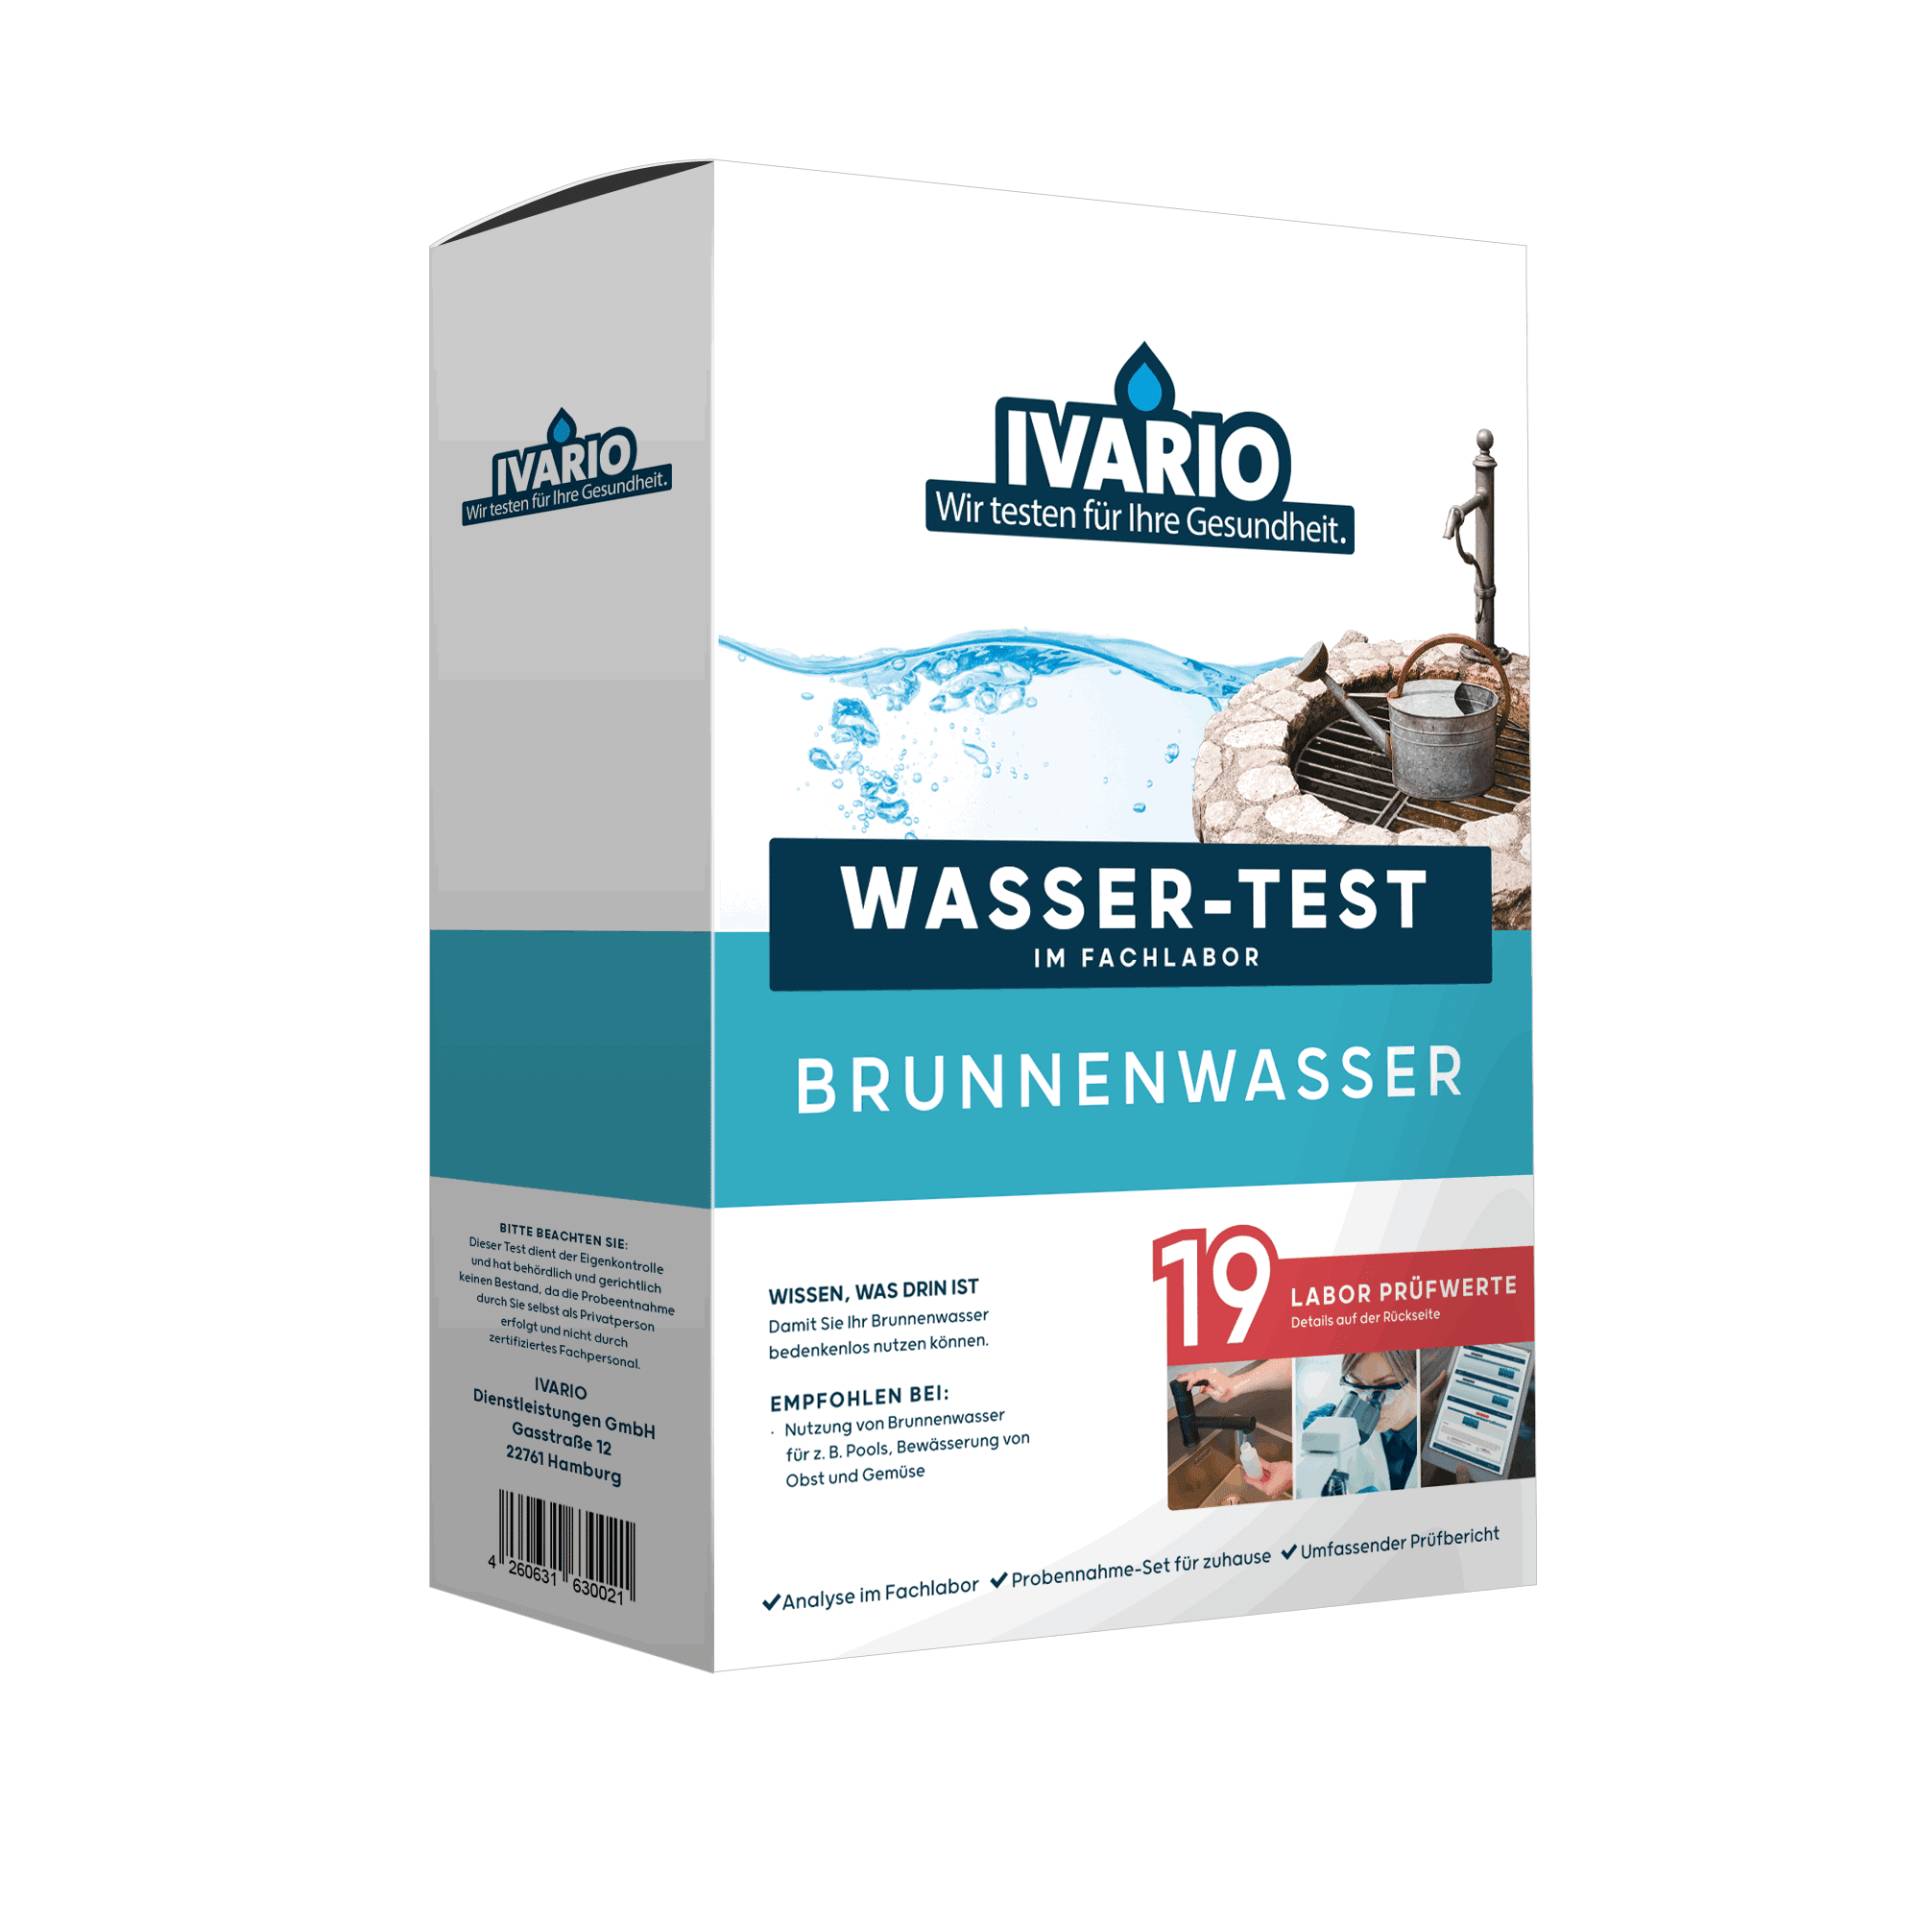 IVARIO Wassertest 'Brunnen' 19 Prüfwerte von IVARIO